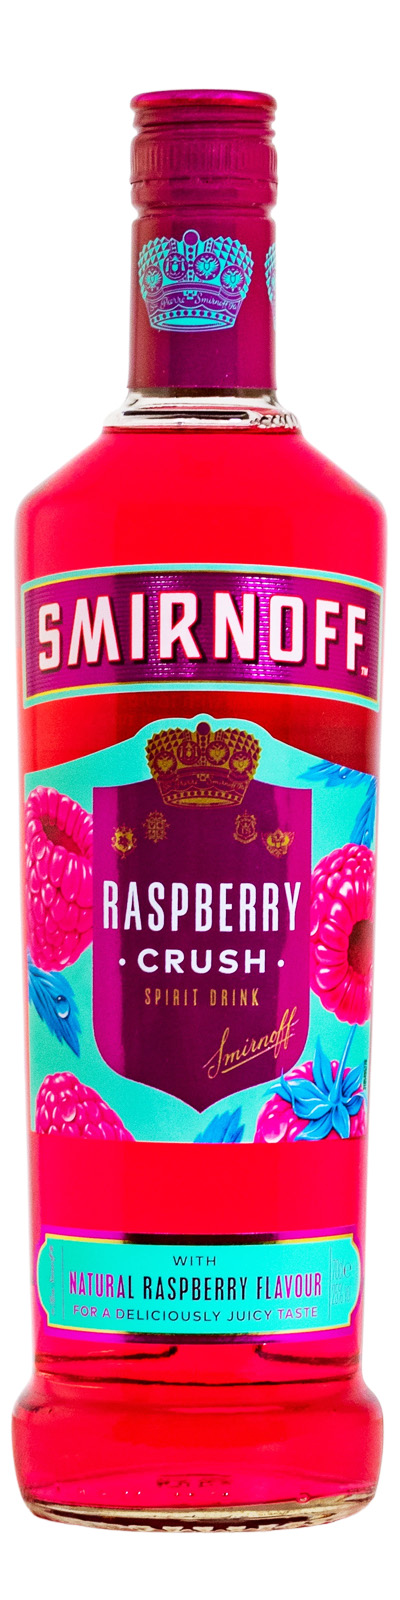 Smirnoff Raspberry Crush Flavoured günstig kaufen